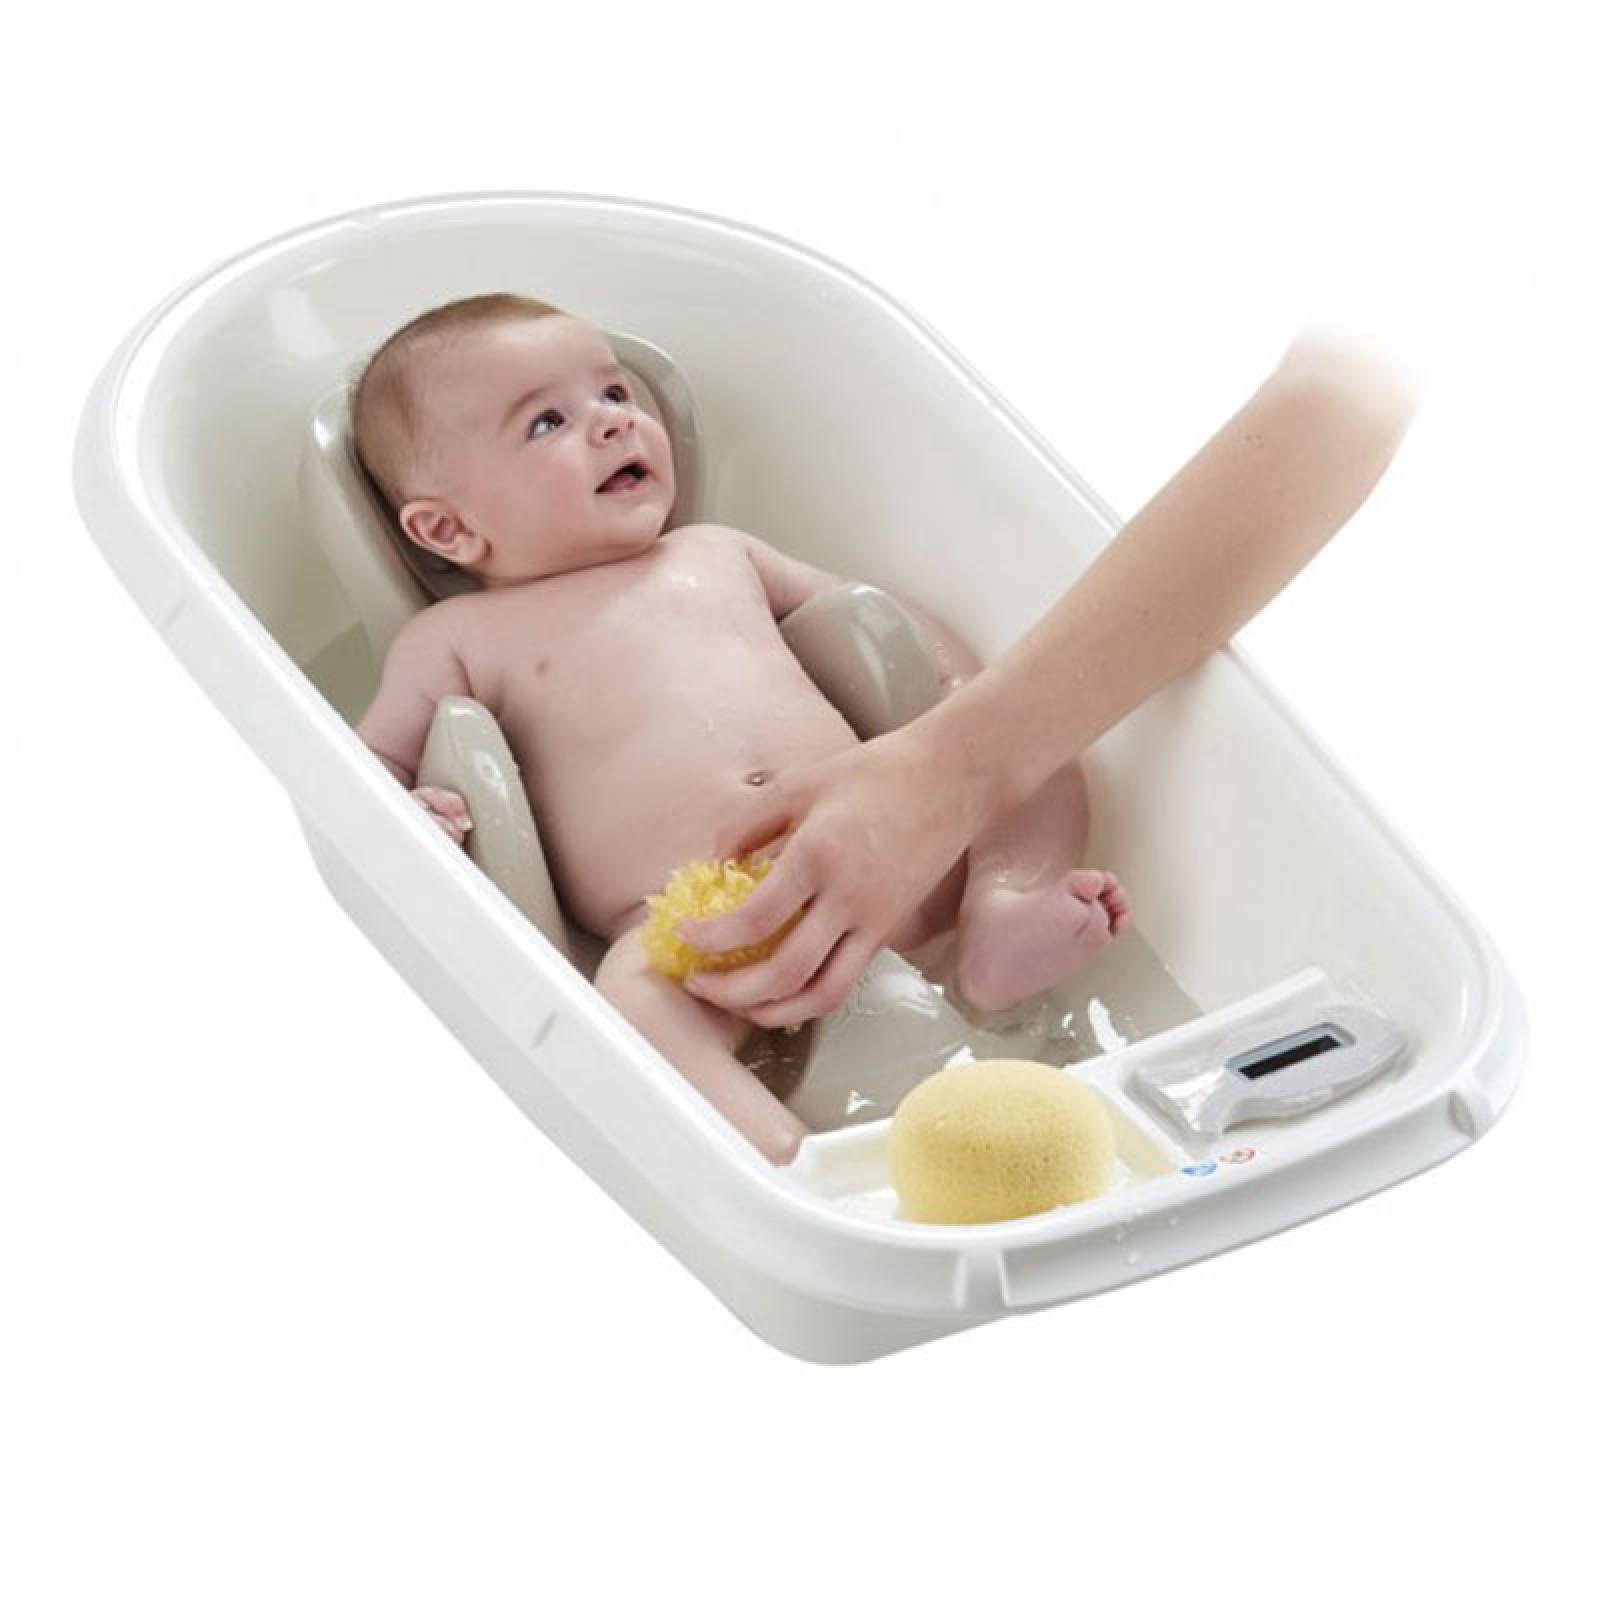 Что нужно для ванночки. Ванночка для новорожденных. Приспособления для купания новорожденных в ванночке. Ванночка для купания с горкой. Ванночка для новорожденных с горкой.